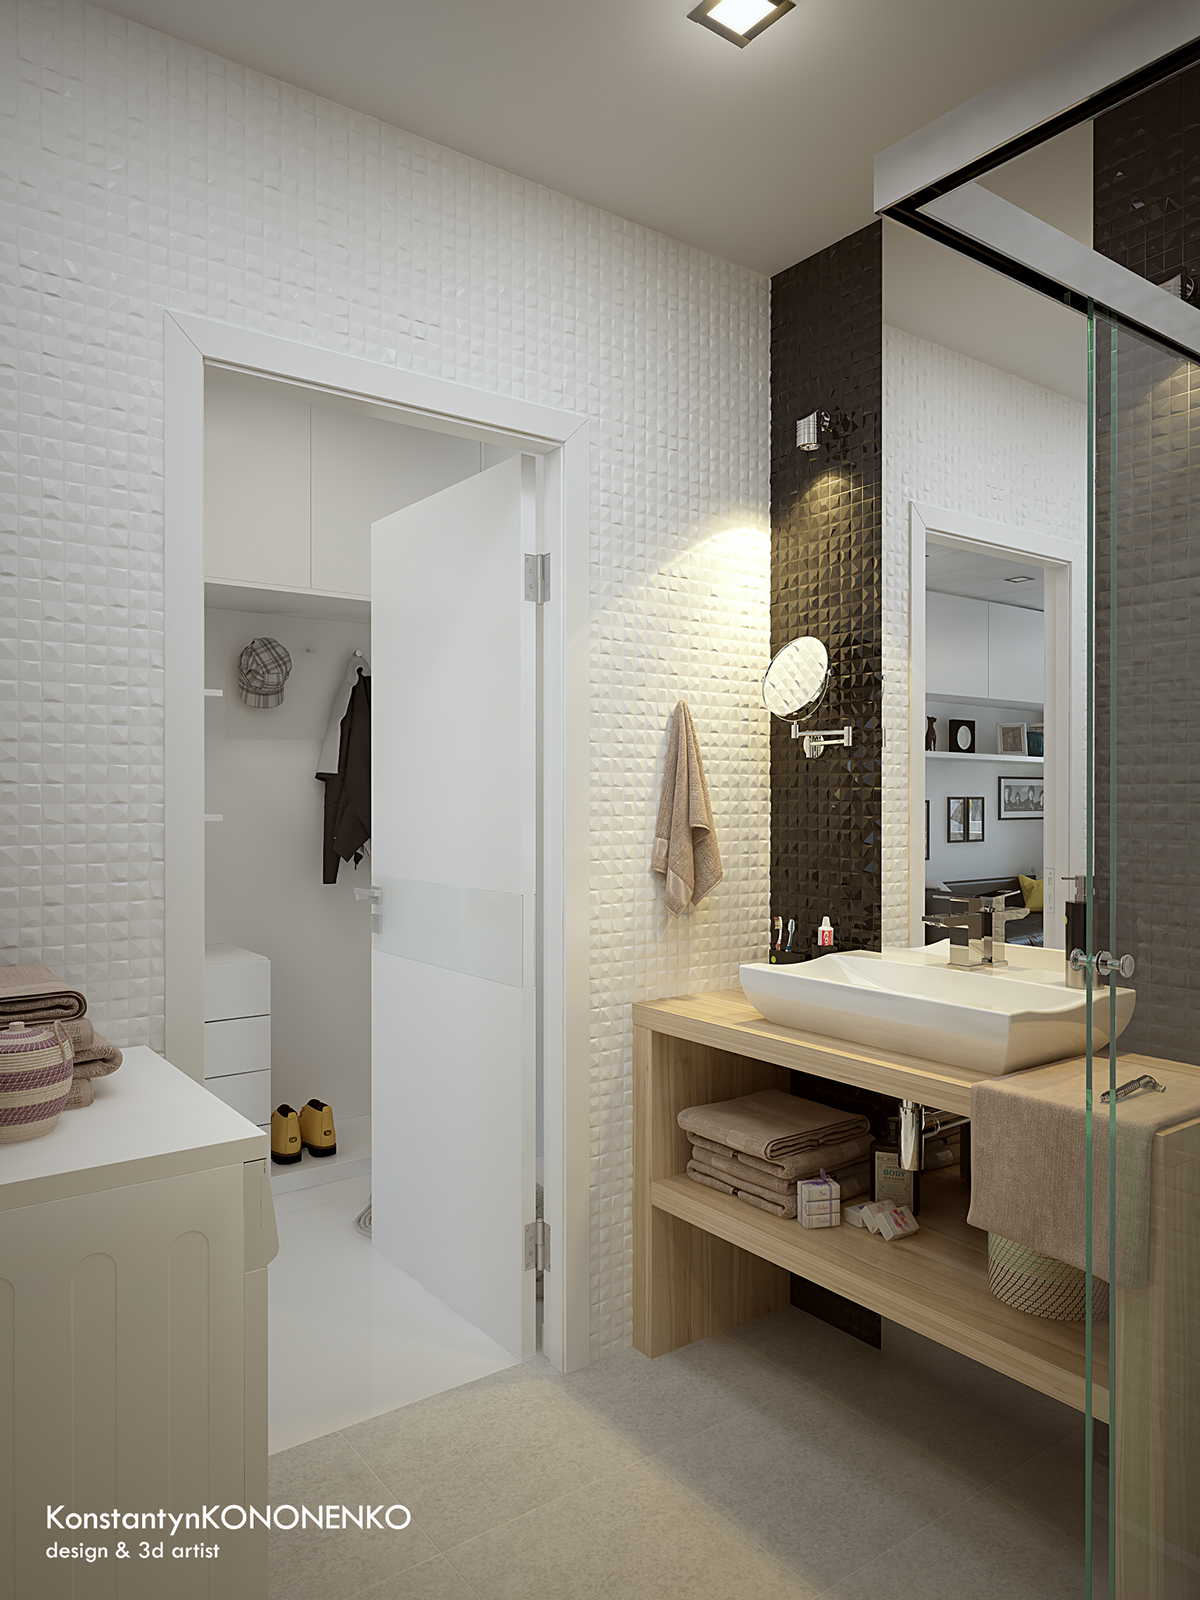 Интерьер маленькой квартиры в контрастных тонах - ванная